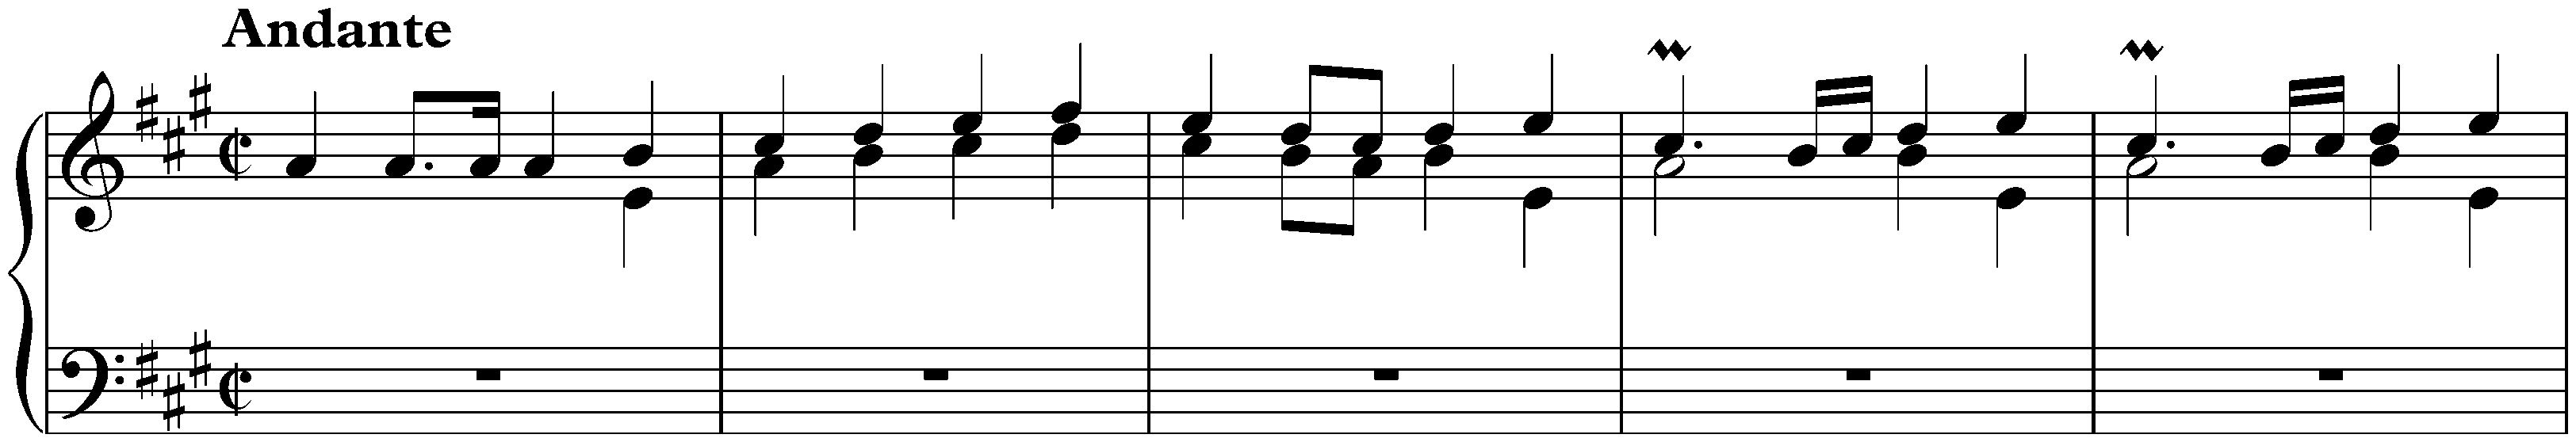 Sonata in A major, K. 499